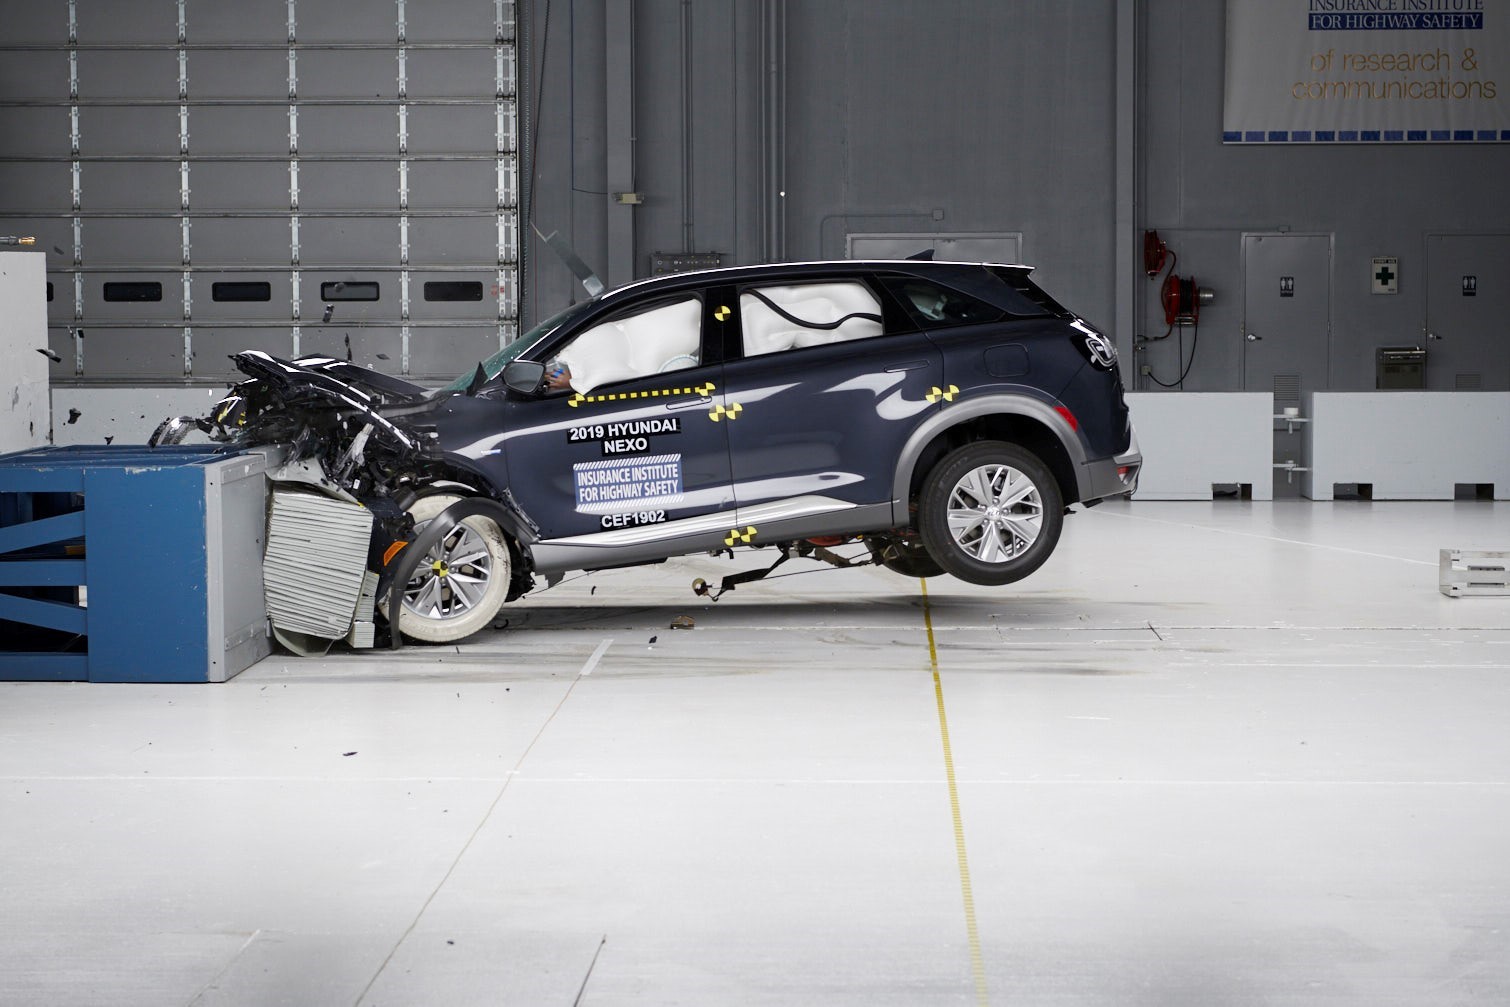 Кроссовер Hyundai NEXO получил награду Страхового института дорожной безопасности (IIHS) TOP SAFETY PICK+